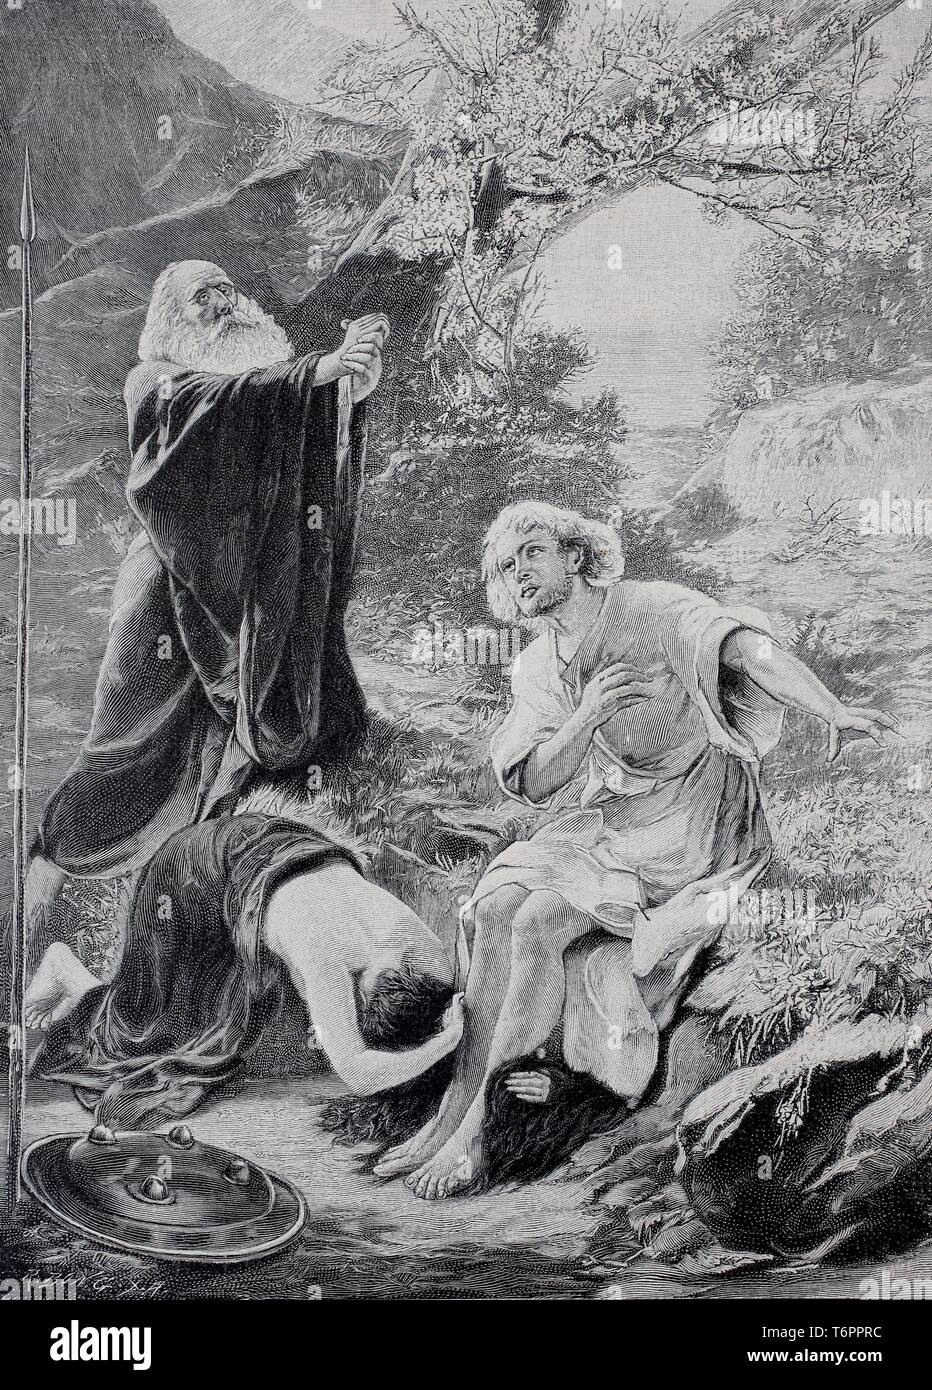 Parsifal, Kundry et Gurnemanz, scène d'un opéra par compositeur allemand Richard Wagner, 1890, illustration historique, Allemagne Banque D'Images